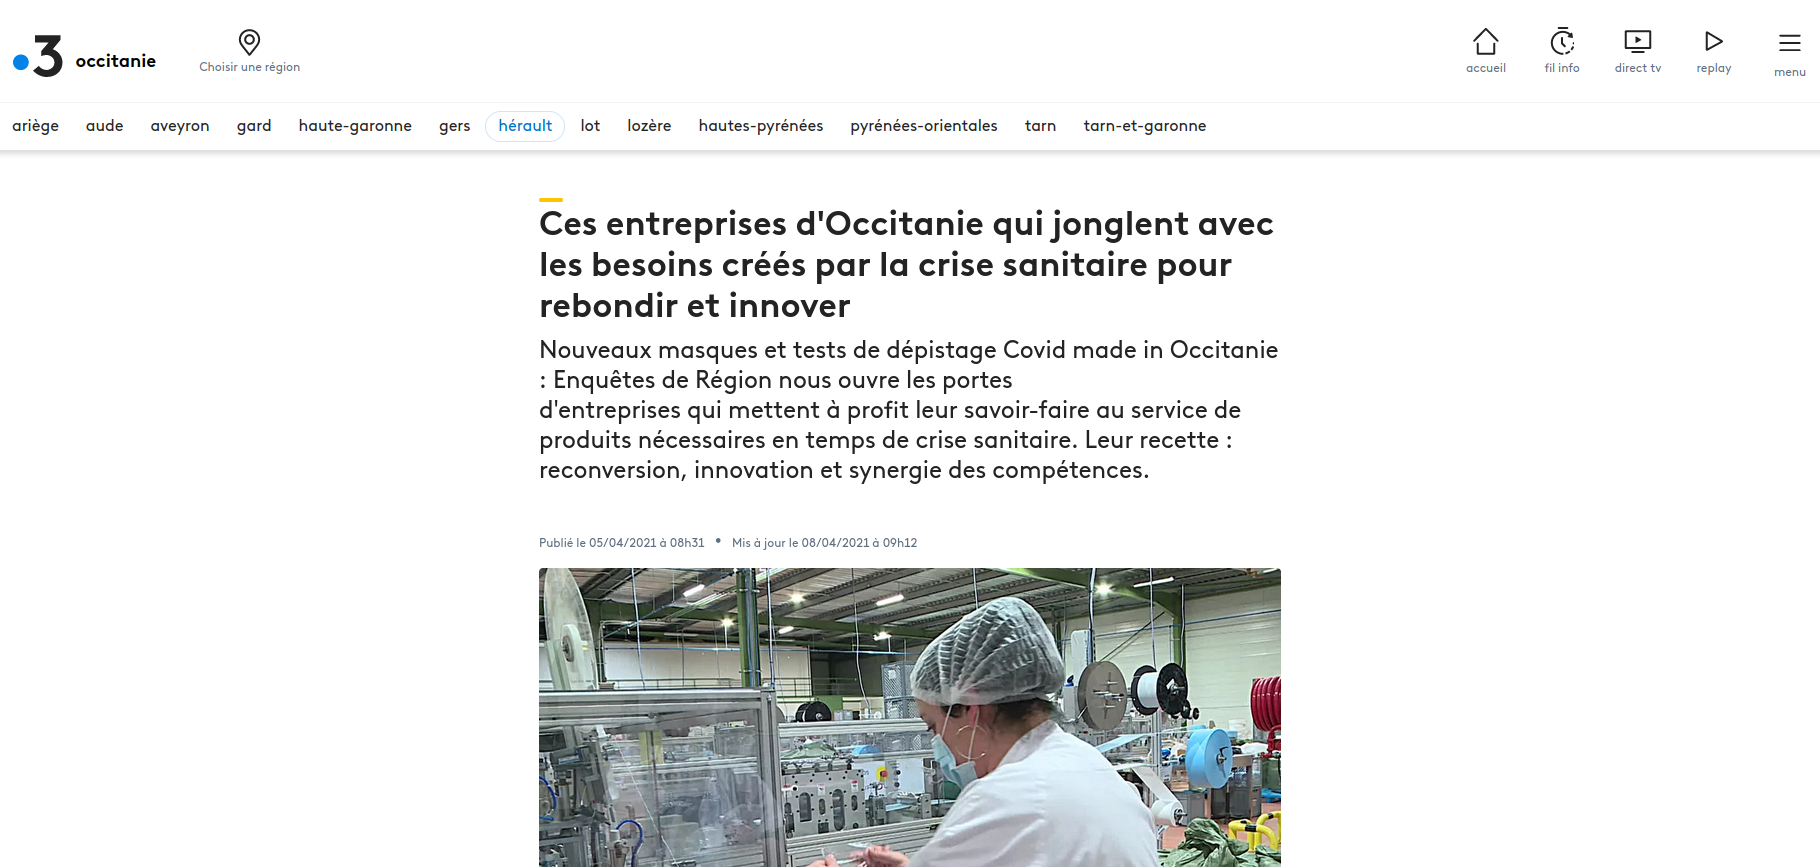 Ces entreprises d'Occitanie qui jonglent avec les besoins créés par la crise sanitaire pour rebondir et innover